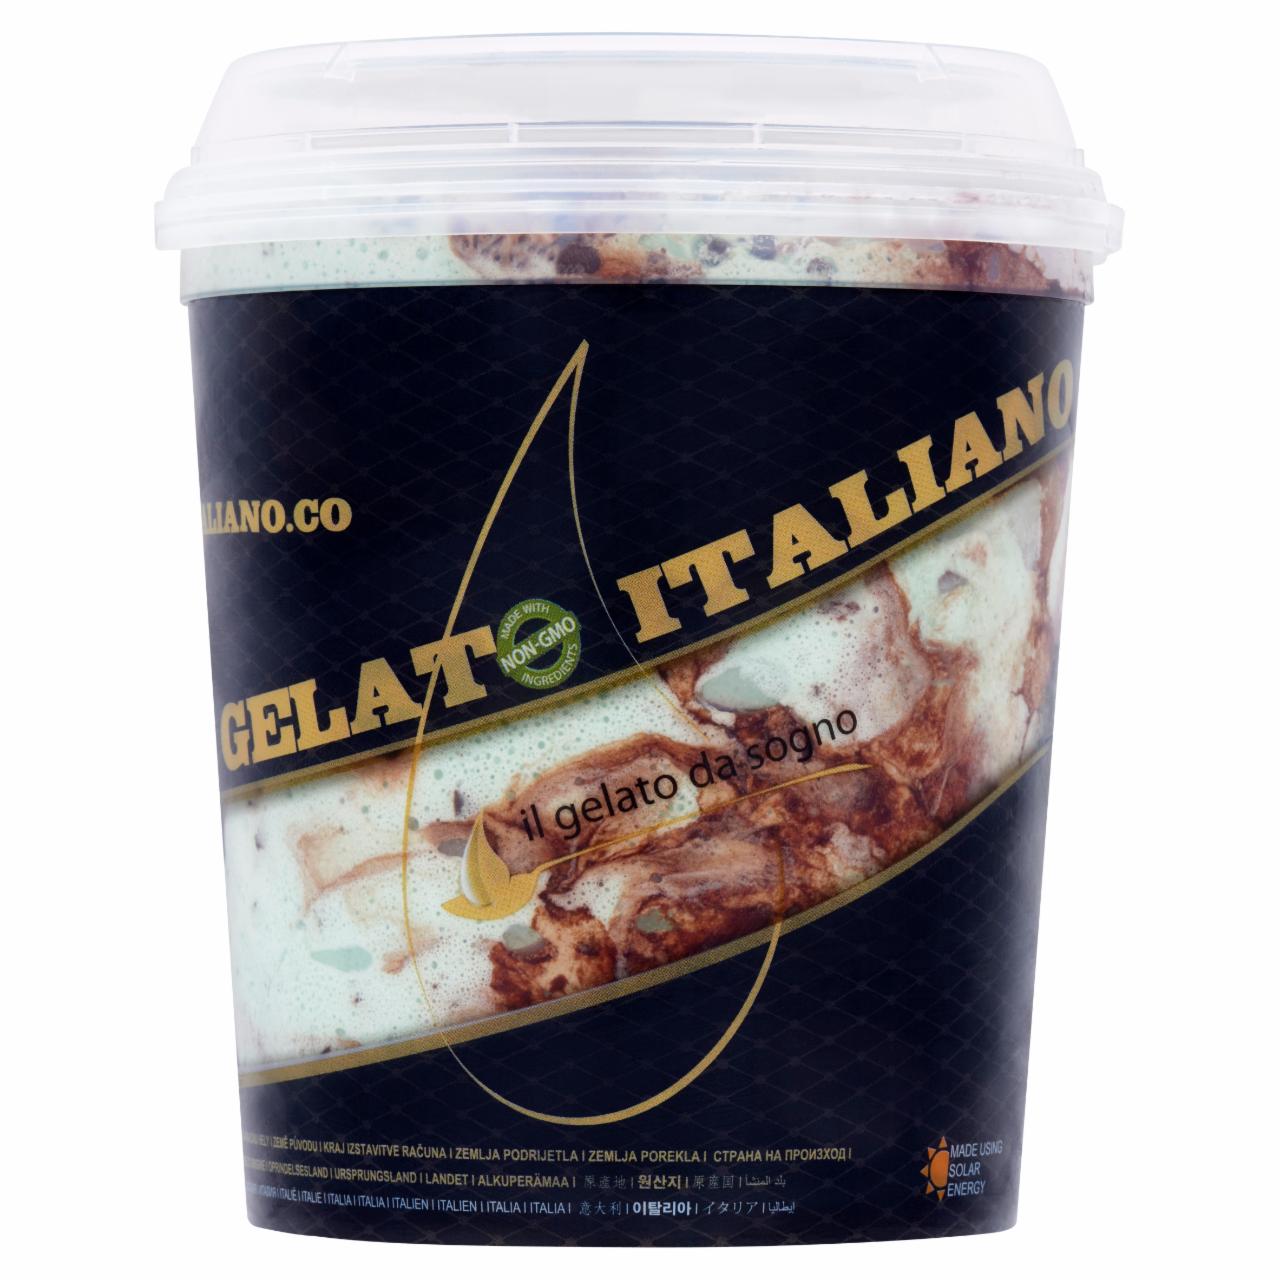 Képek - Gusto Italiano Chocomenta menta és csokoládé ízű olasz fagylaltkülönlegesség 1000 ml